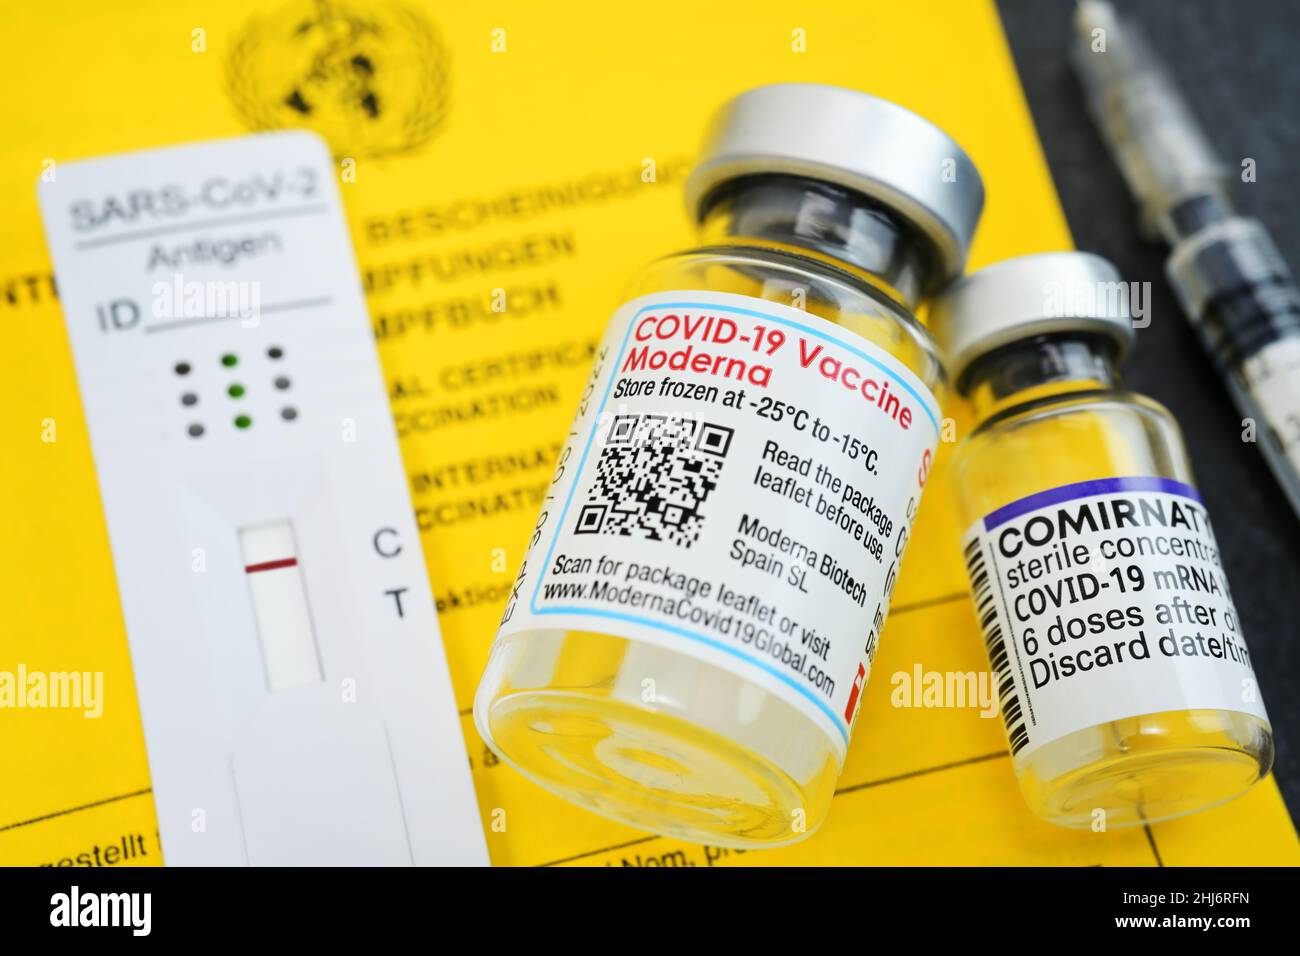 Impfausweis mit Impfspritze, negativem Corona-Schnelltest und Impfstofffläschchen von Biontech und Moderna Stock Photo